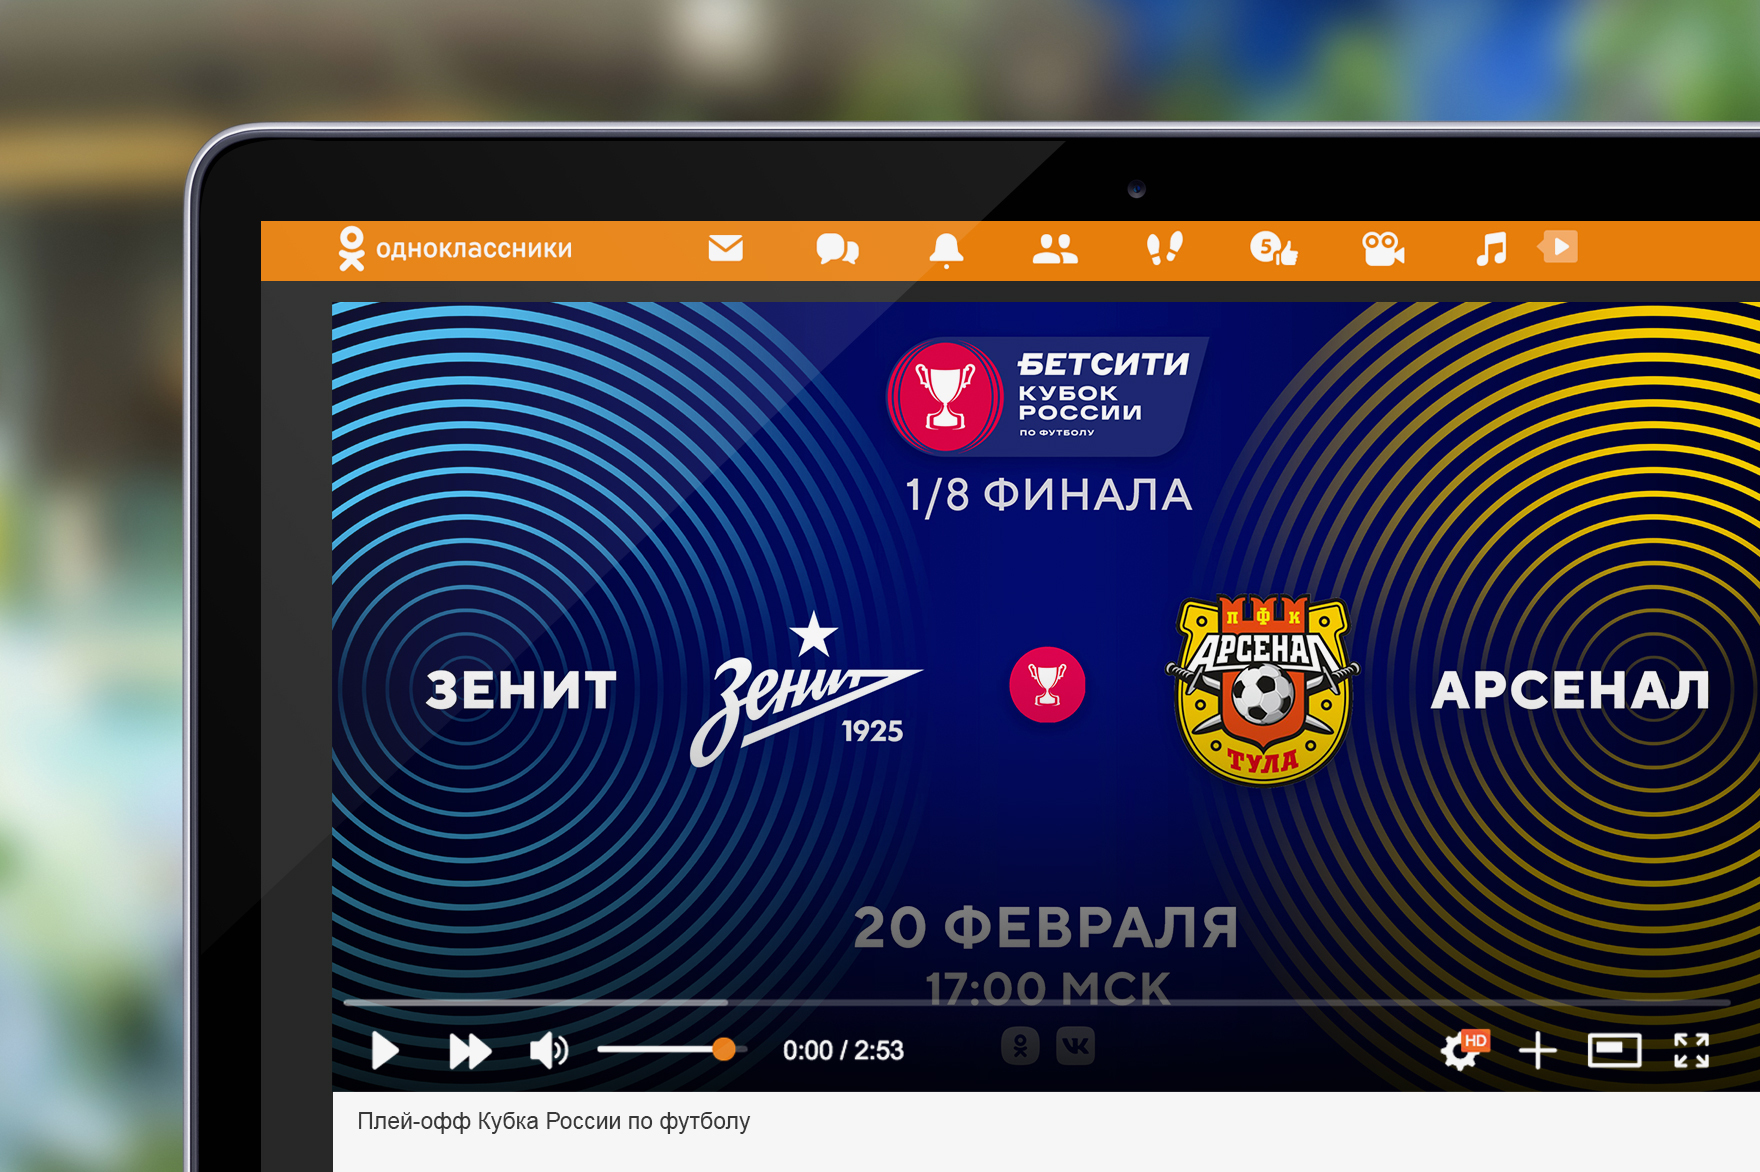 ВК и ОК бесплатно покажут все матчи плей-офф Кубка России по футболу